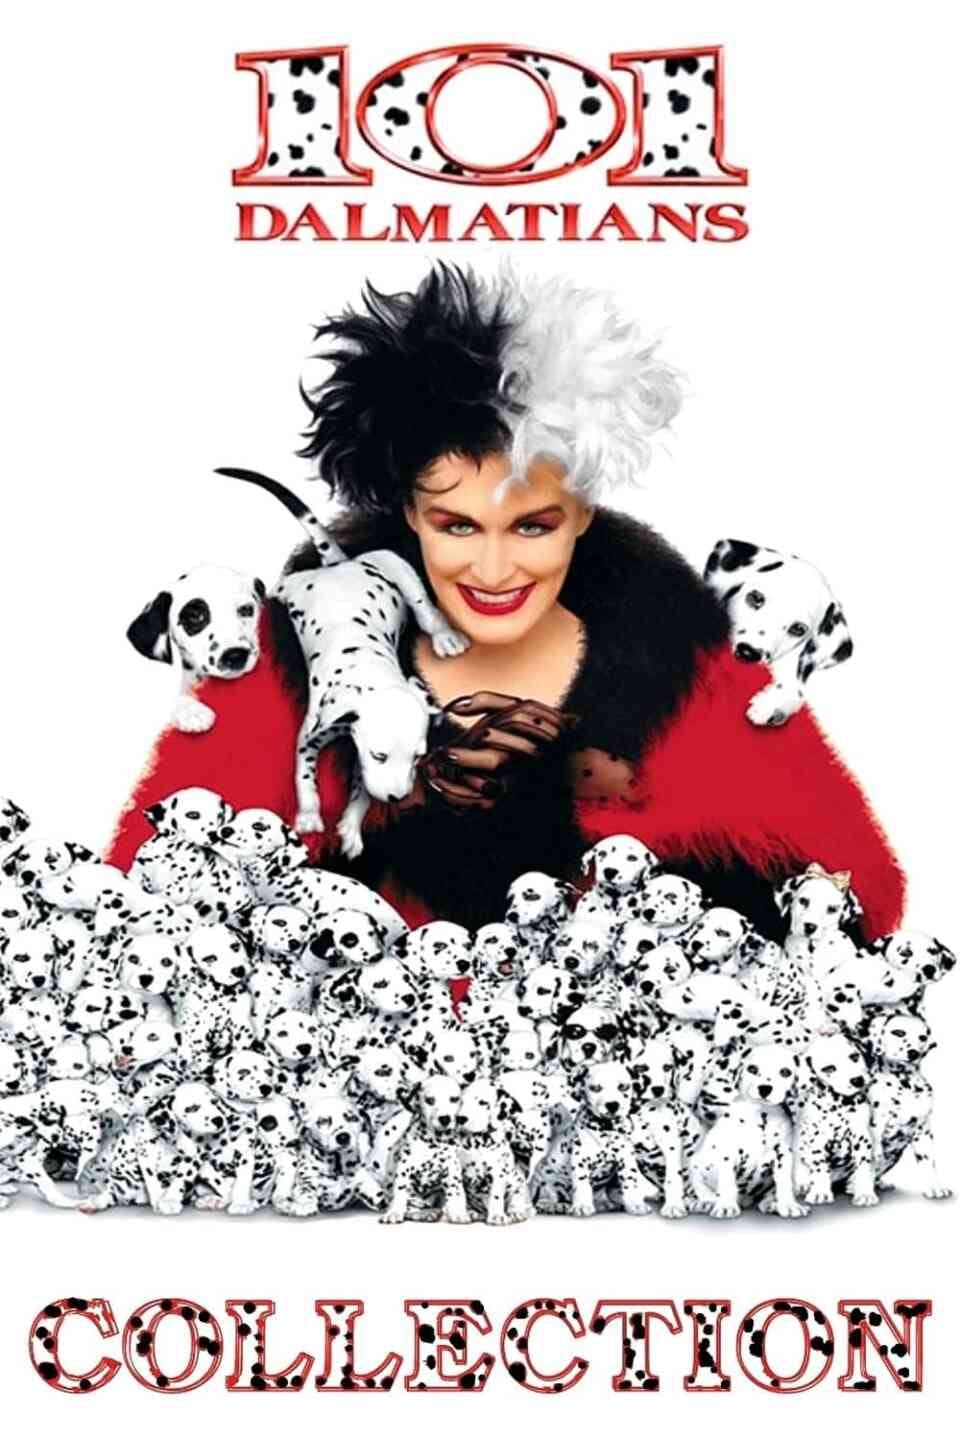 Read 101 Dalmatians screenplay (poster)